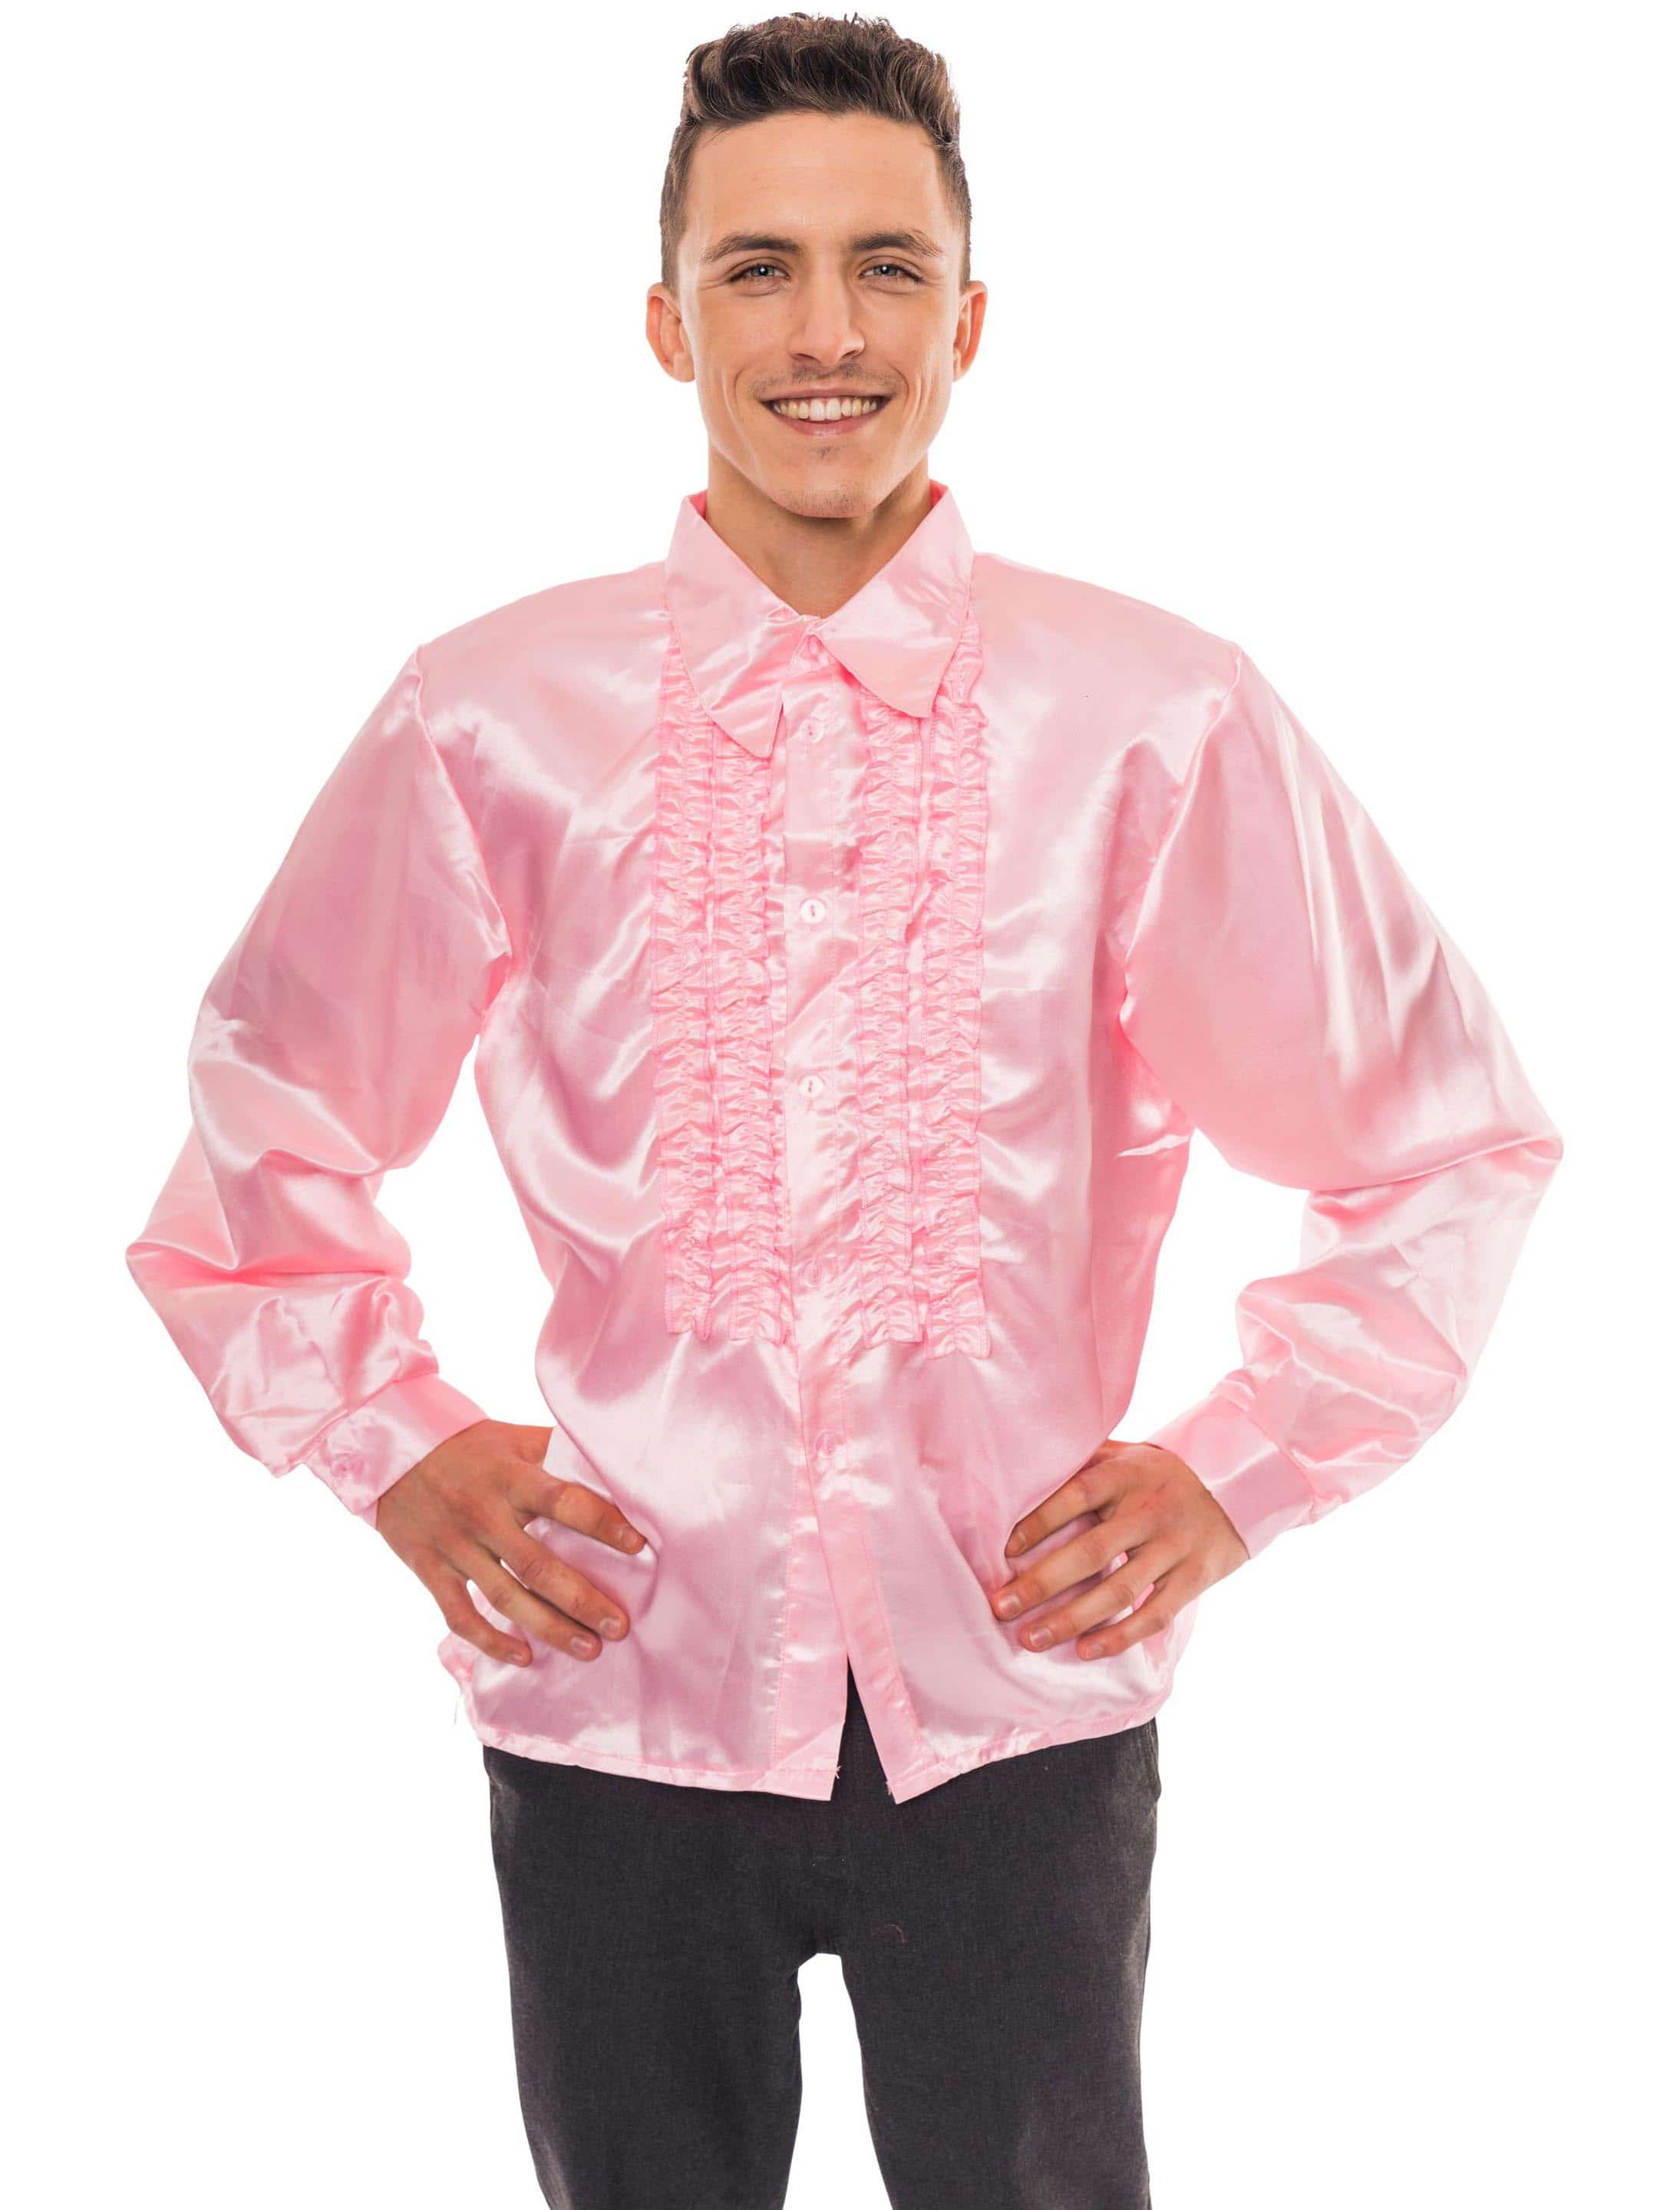 Discohemd Herren pink XL